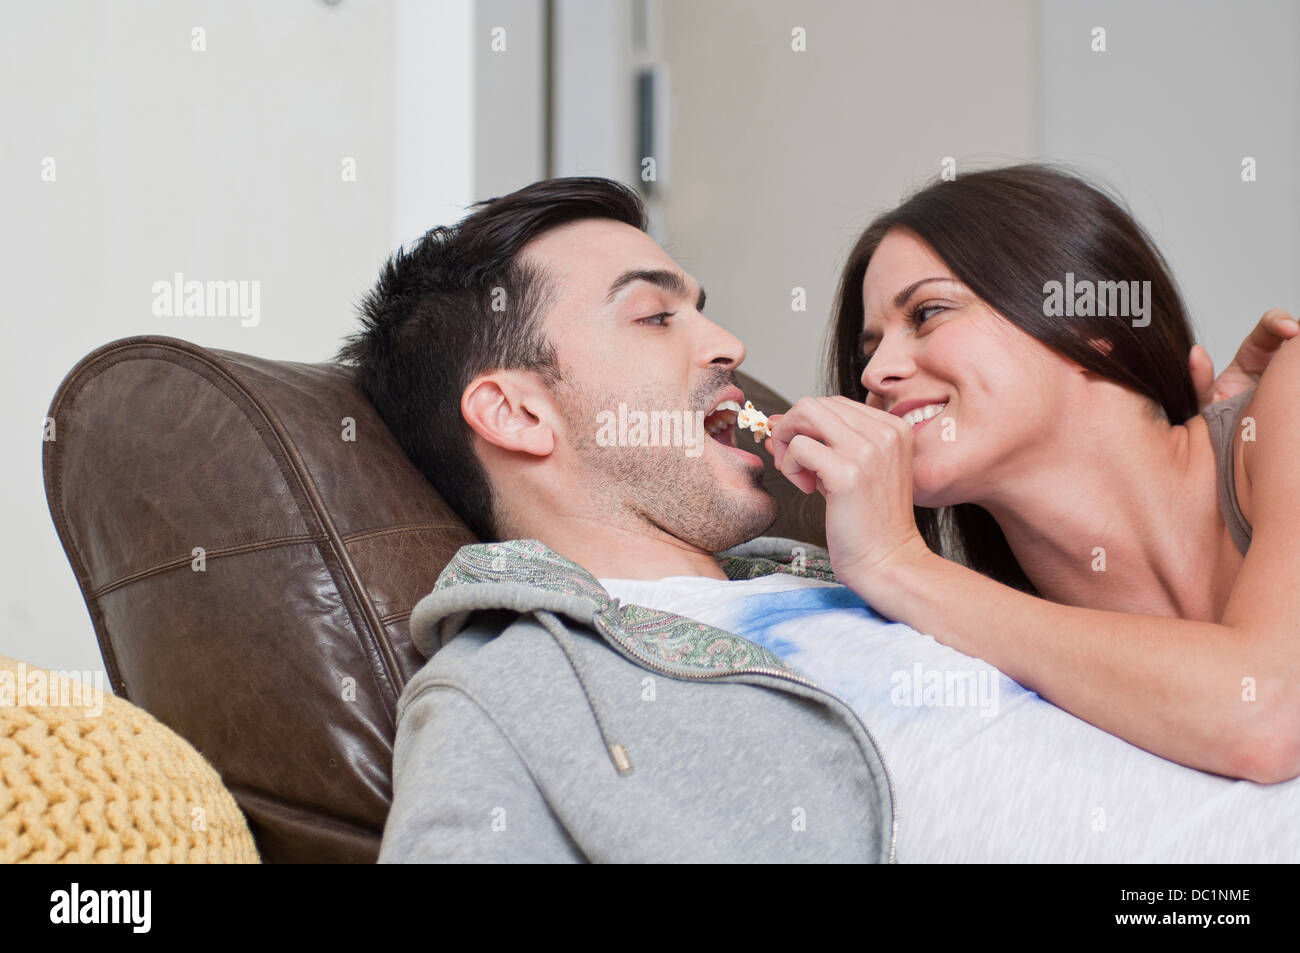 Young couple lying on sofa sharing popcorn Stock Photo image image